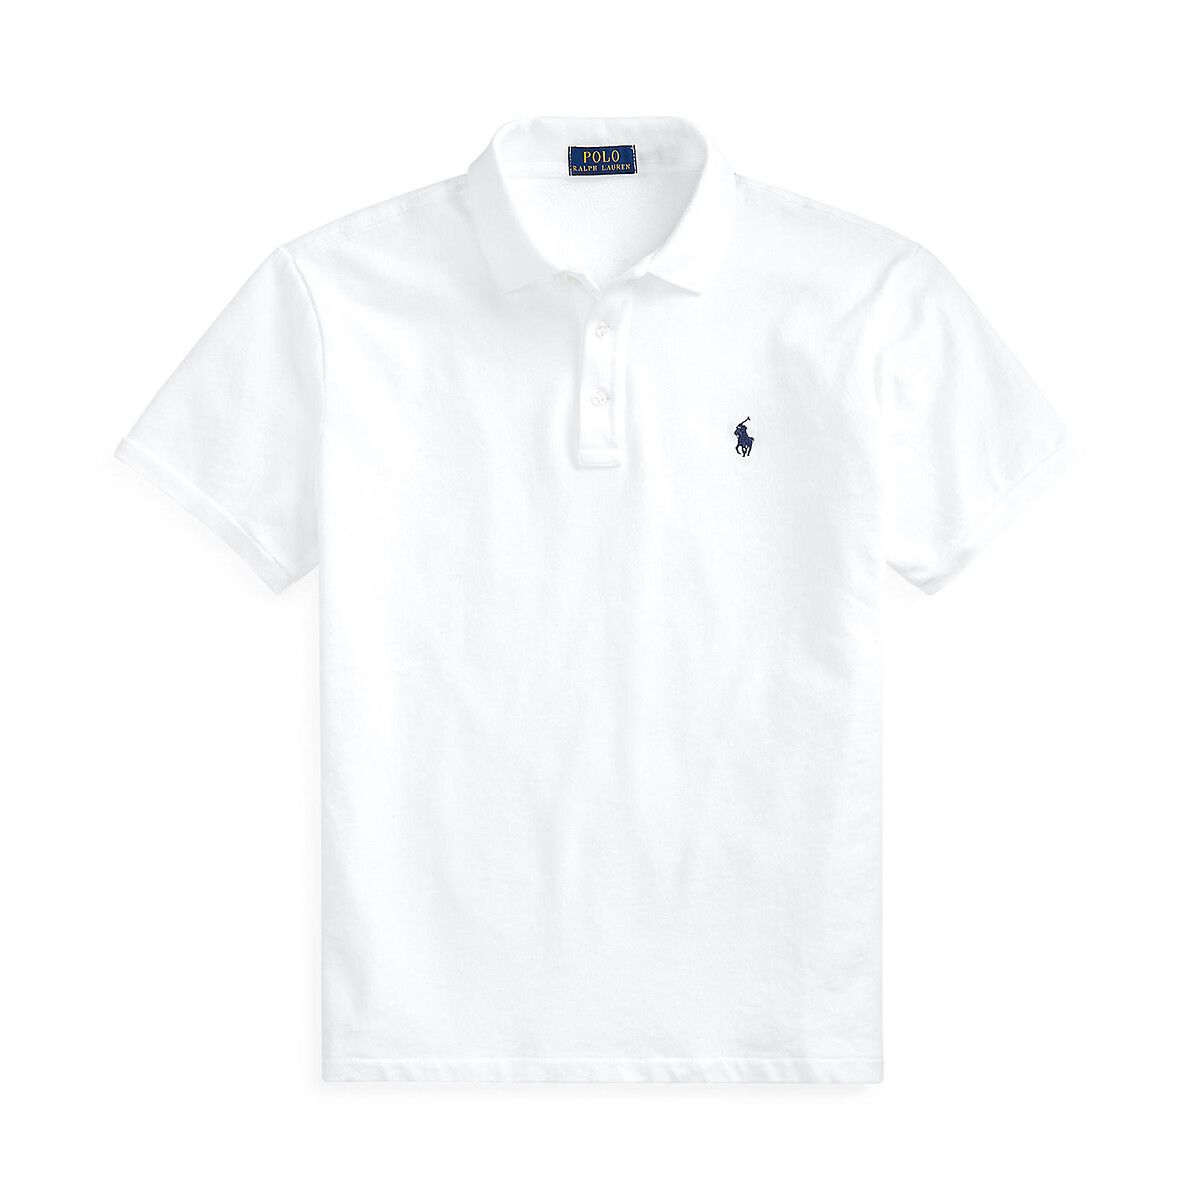 Рубашка-поло прямого покроя из махровой ткани Spa Terry  XL белый LaRedoute, размер XL - фото 4